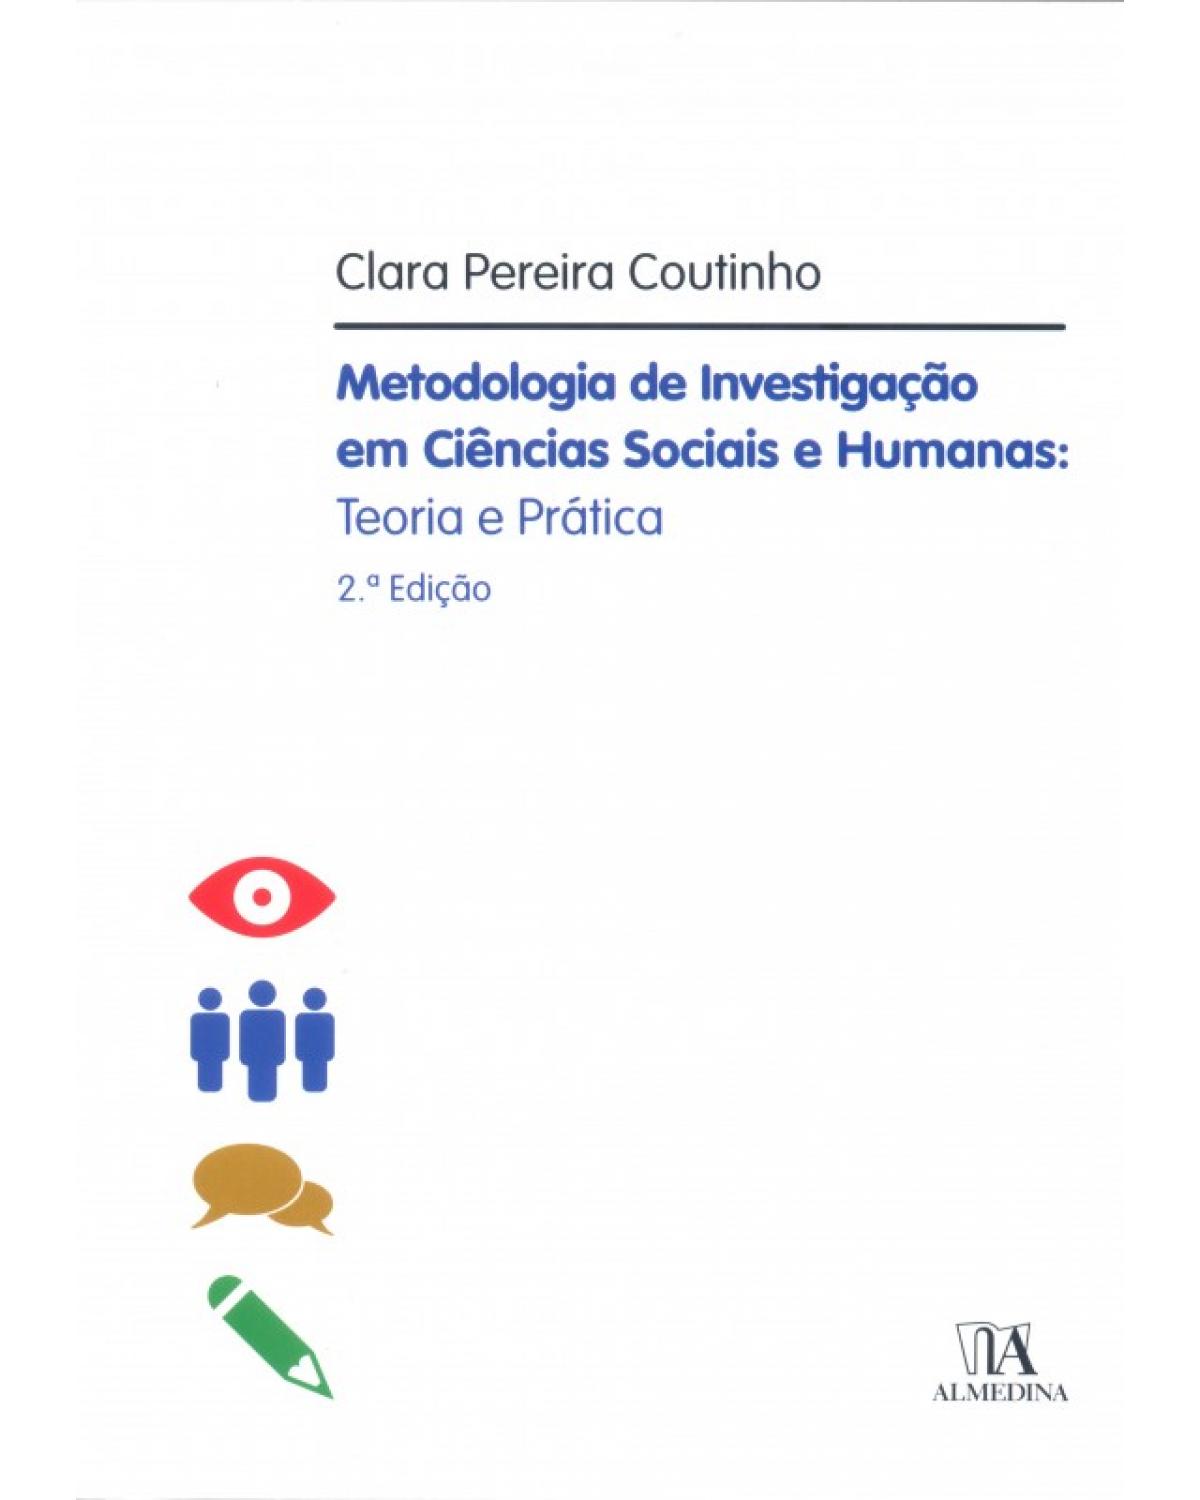 Metodologia de investigação em ciências sociais e humanas - Teoria e prática - 2ª Edição | 2020